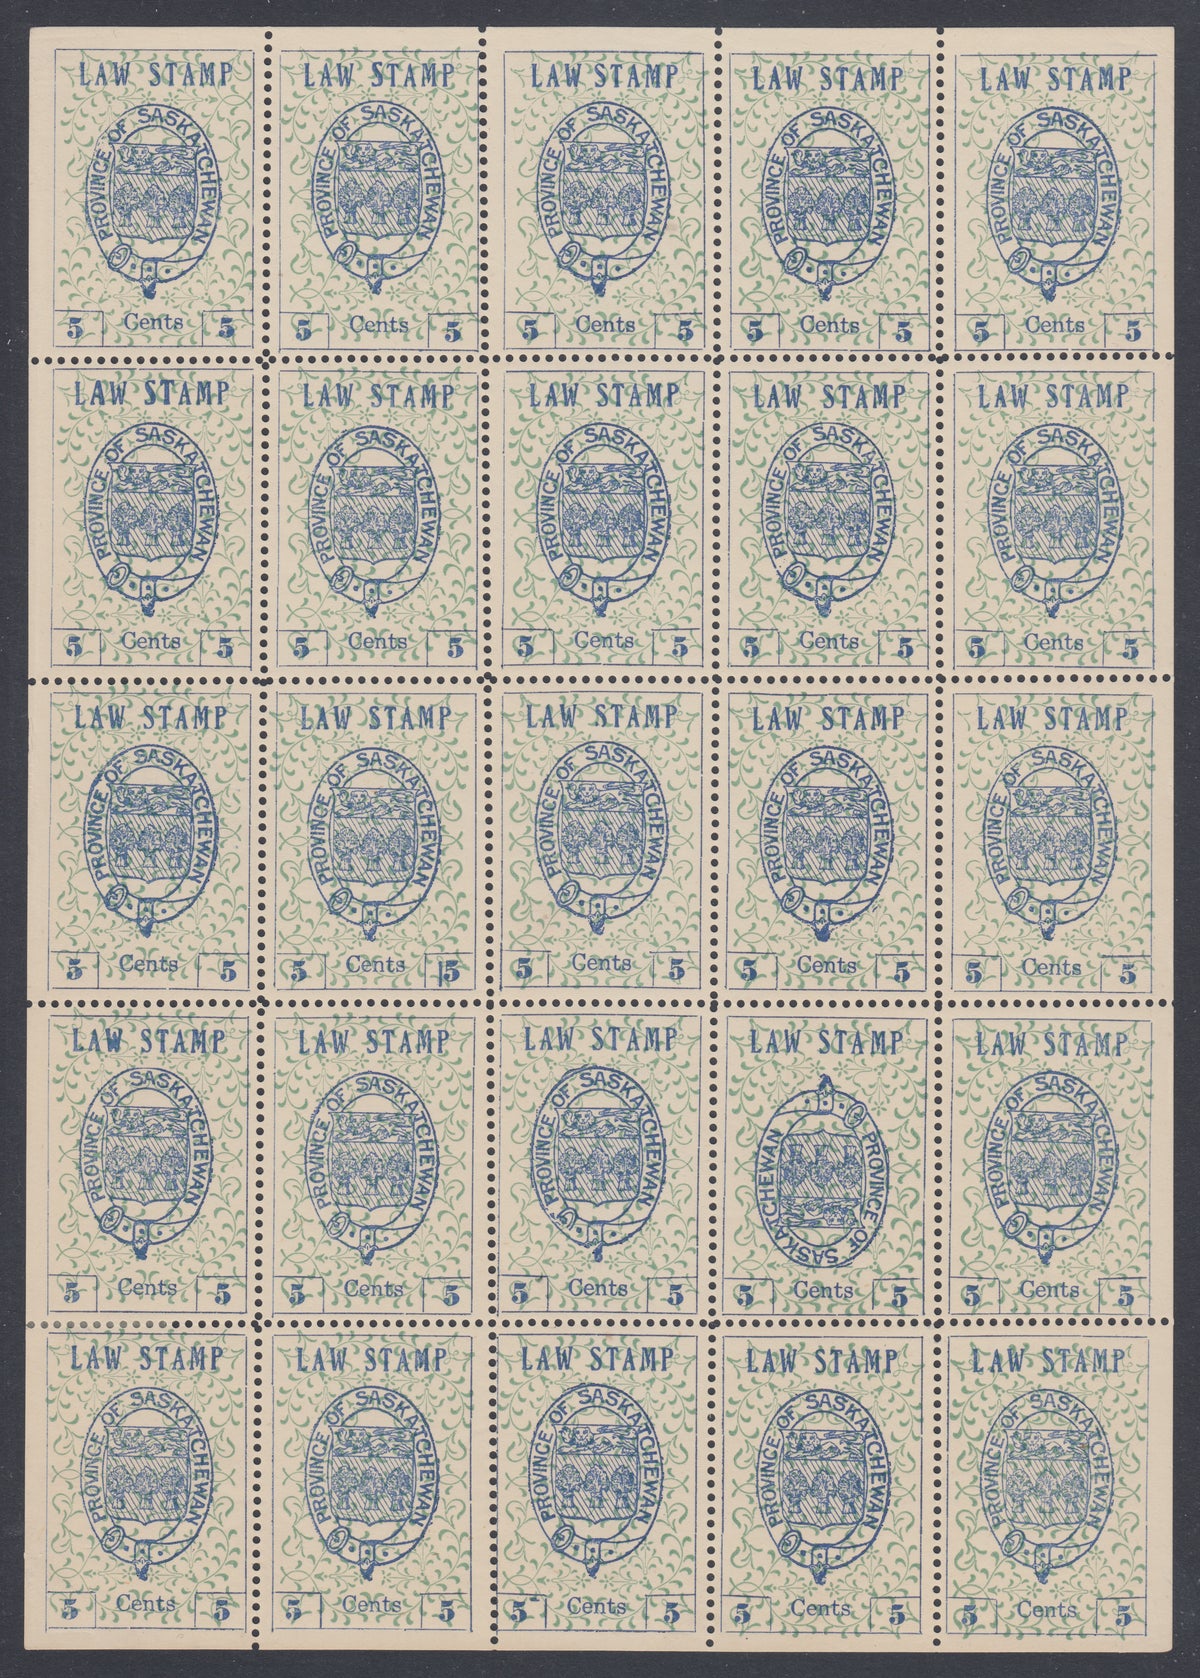 0001SL1701 - SL1,a,b - Mint Sheet of 25 - UNIQUE